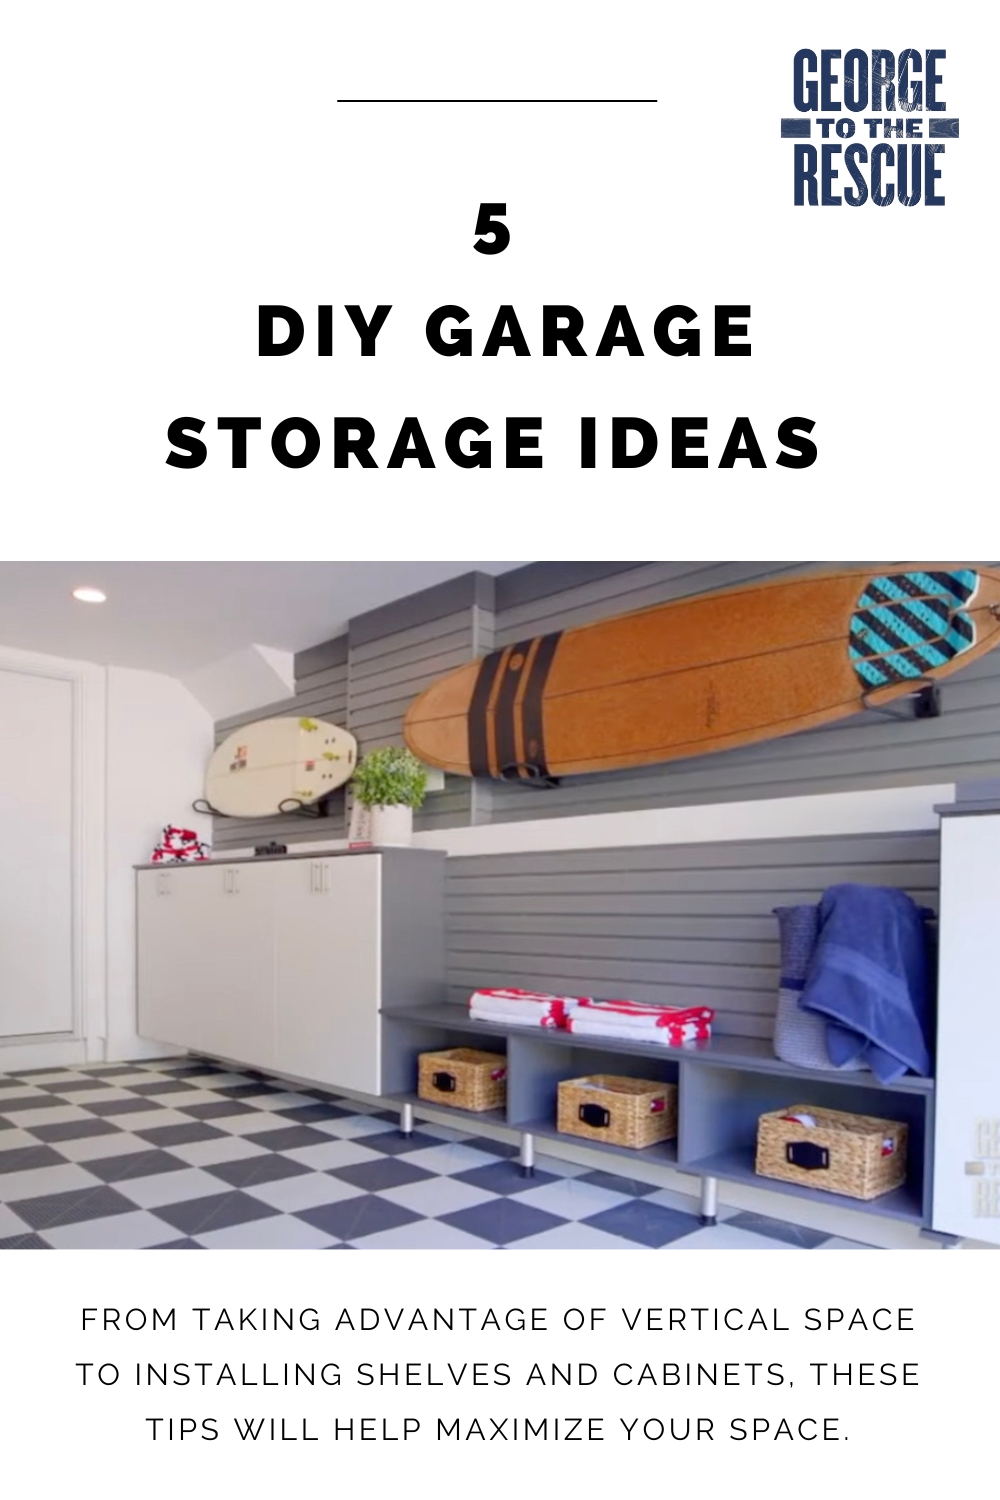 Garage Storage Labels, Organized Storage, Custom Labels, Storage